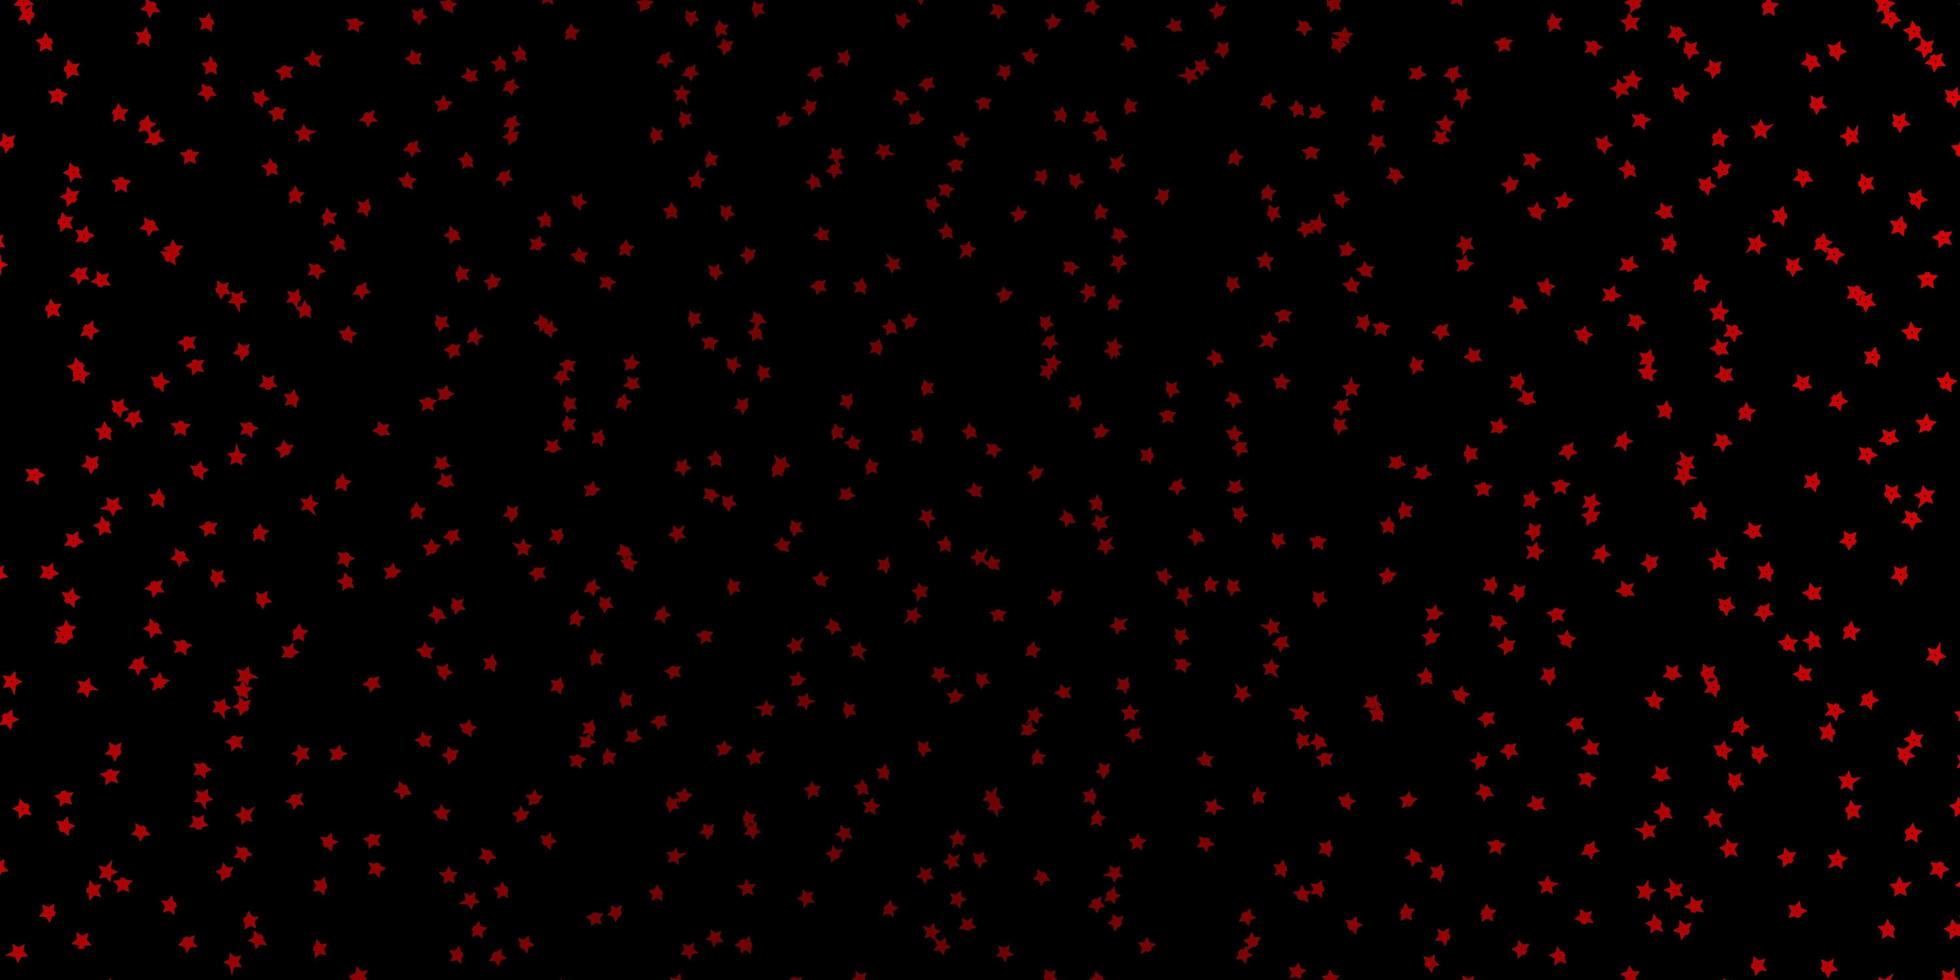 sfondo vettoriale rosso scuro con stelle colorate. brillante illustrazione colorata con stelle piccole e grandi. modello per incartare i regali.